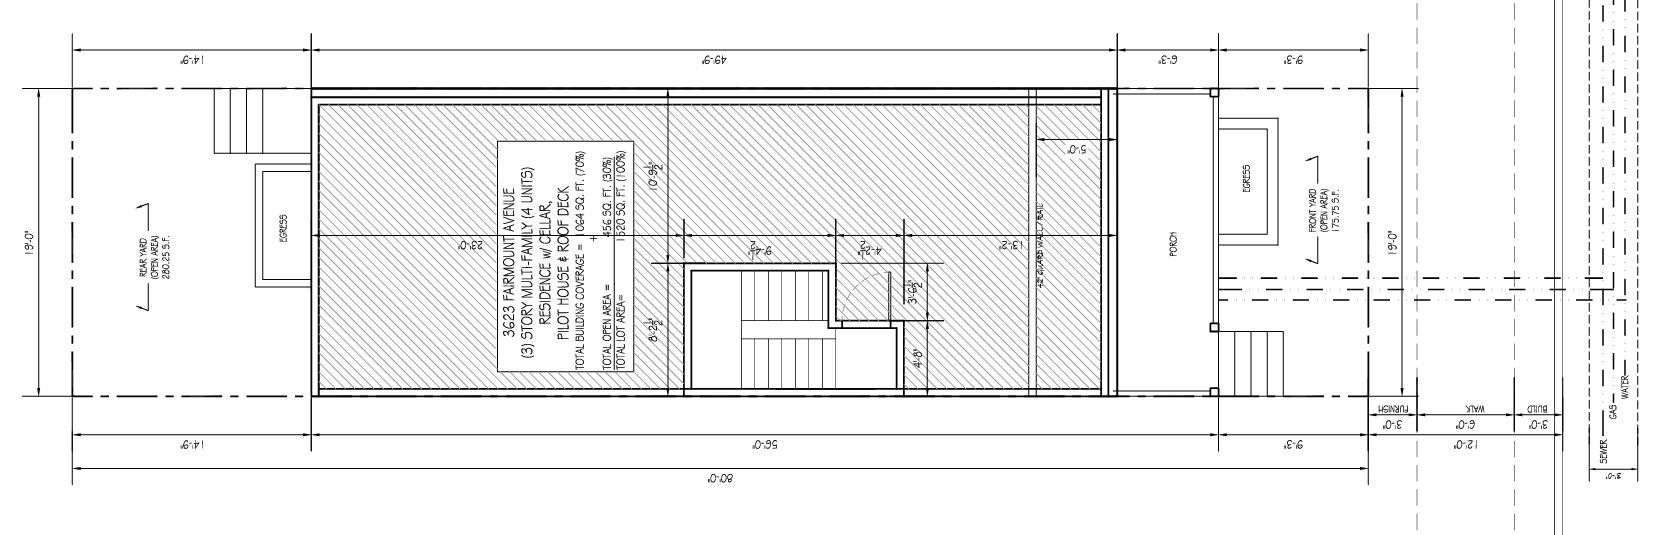 3623 Fairmount Avenue Floor Plan